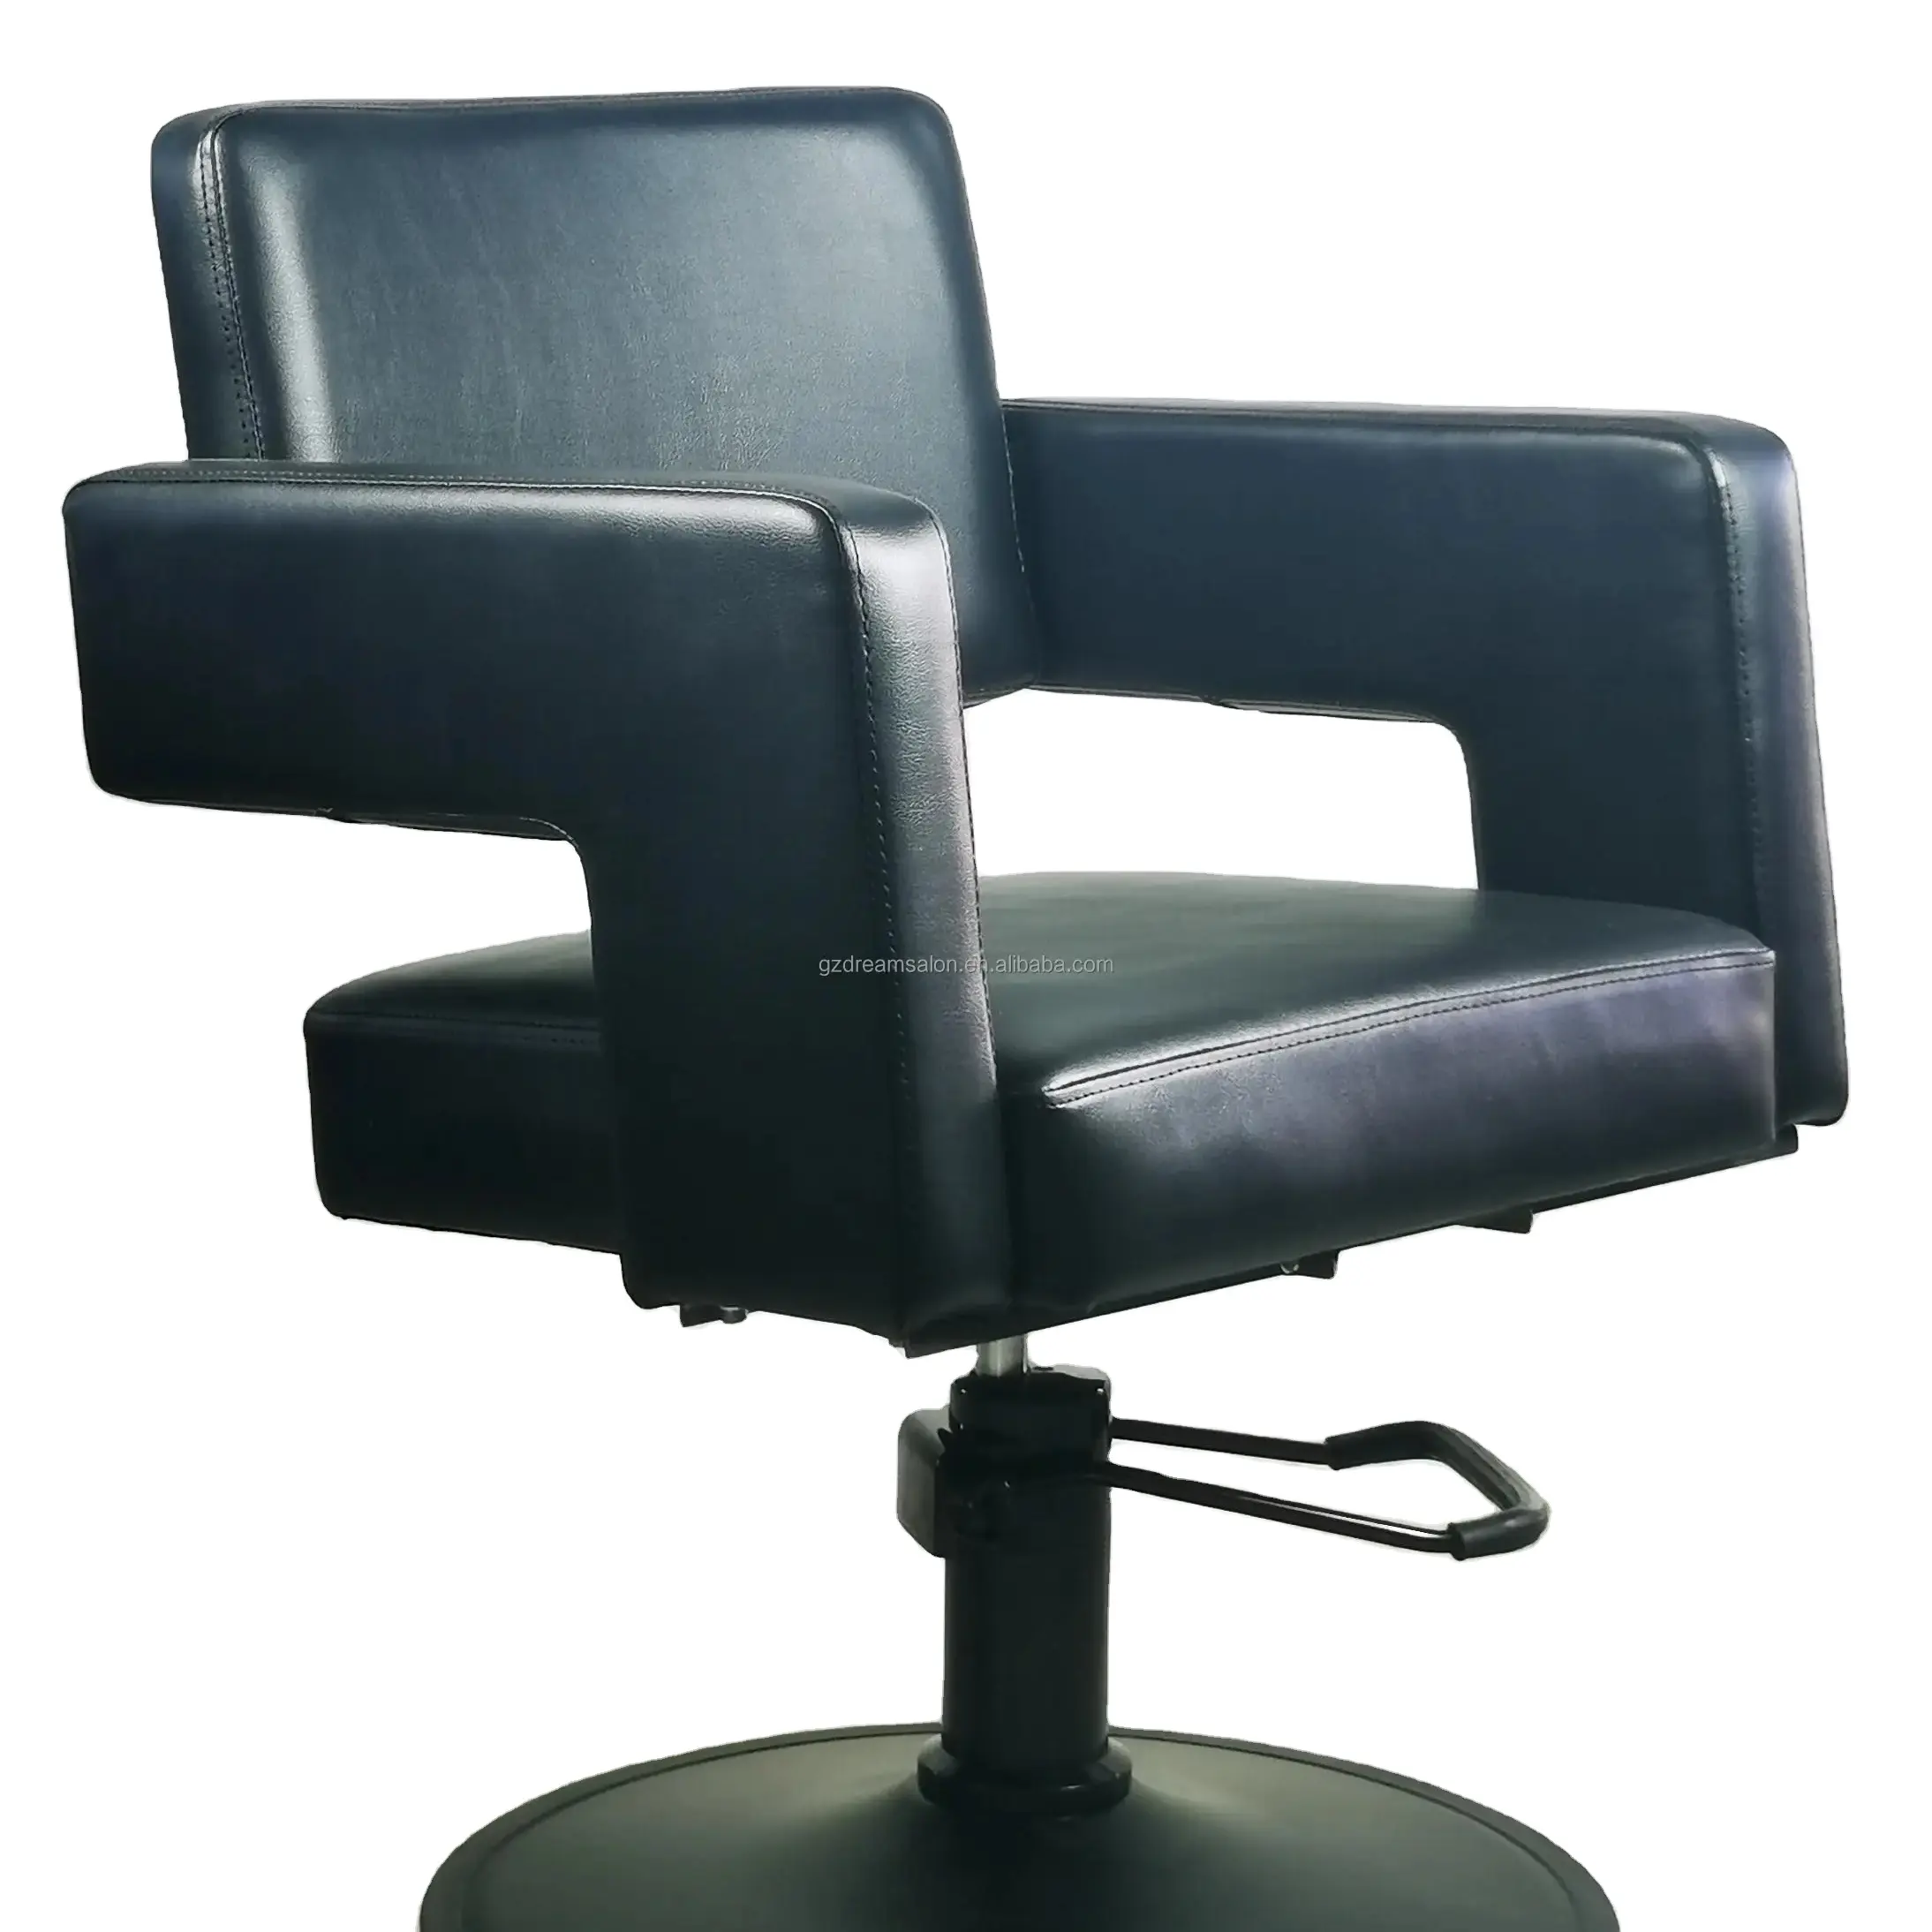 DREAMSALON all'ingrosso buon prezzo mobili da salone tutto nero serie Open Back parrucchiere sedia